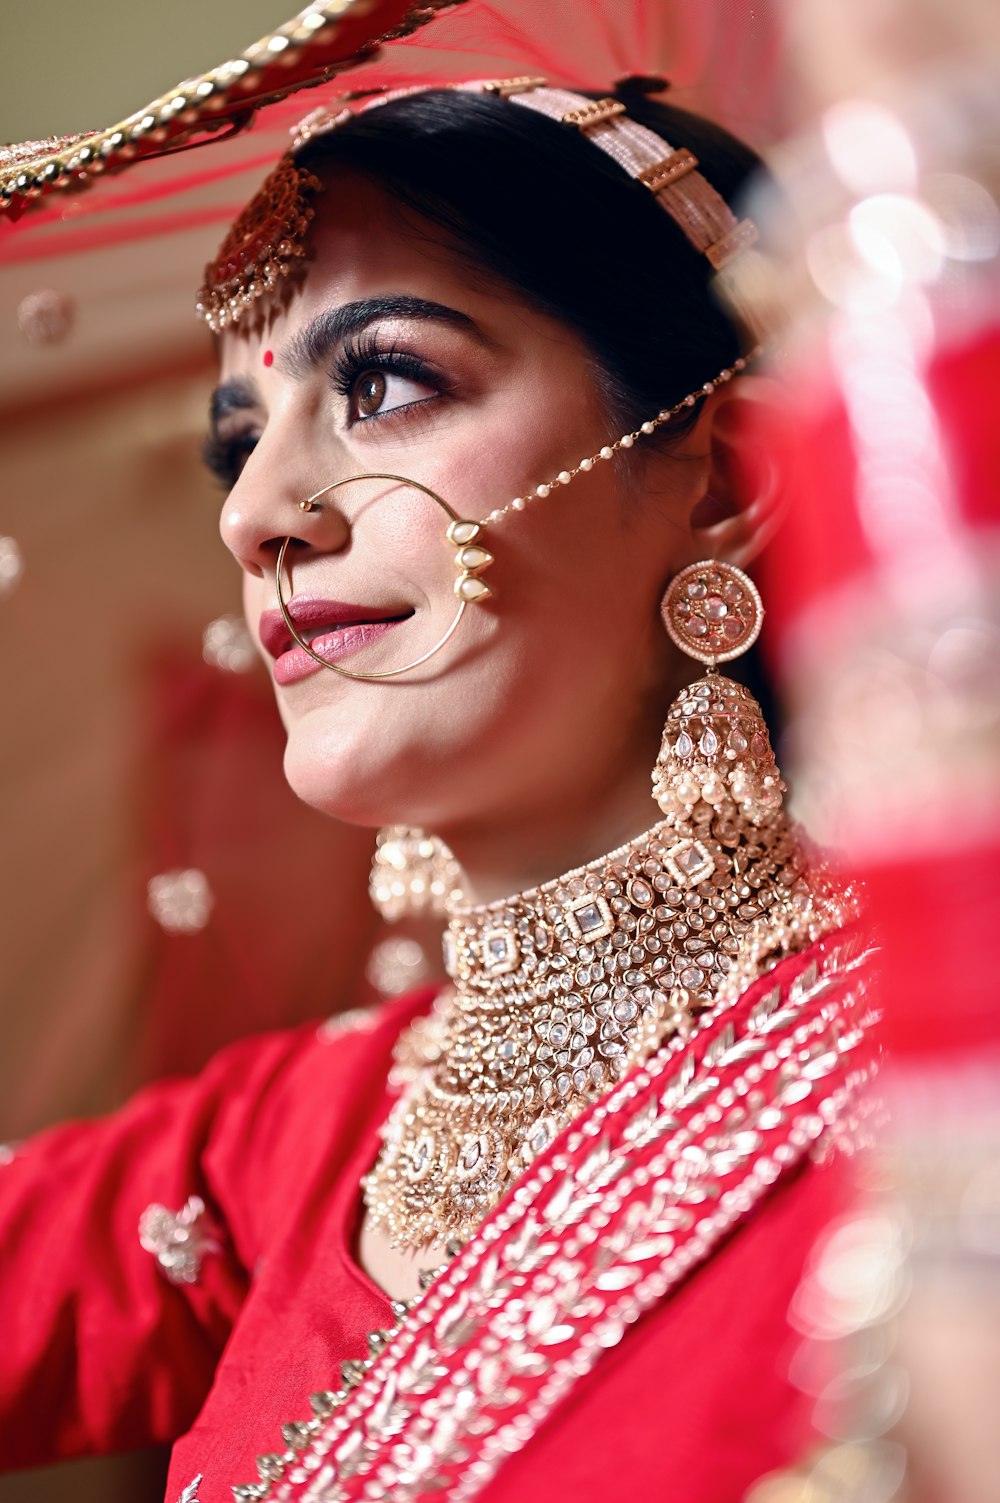 Una mujer con un atuendo rojo y joyas